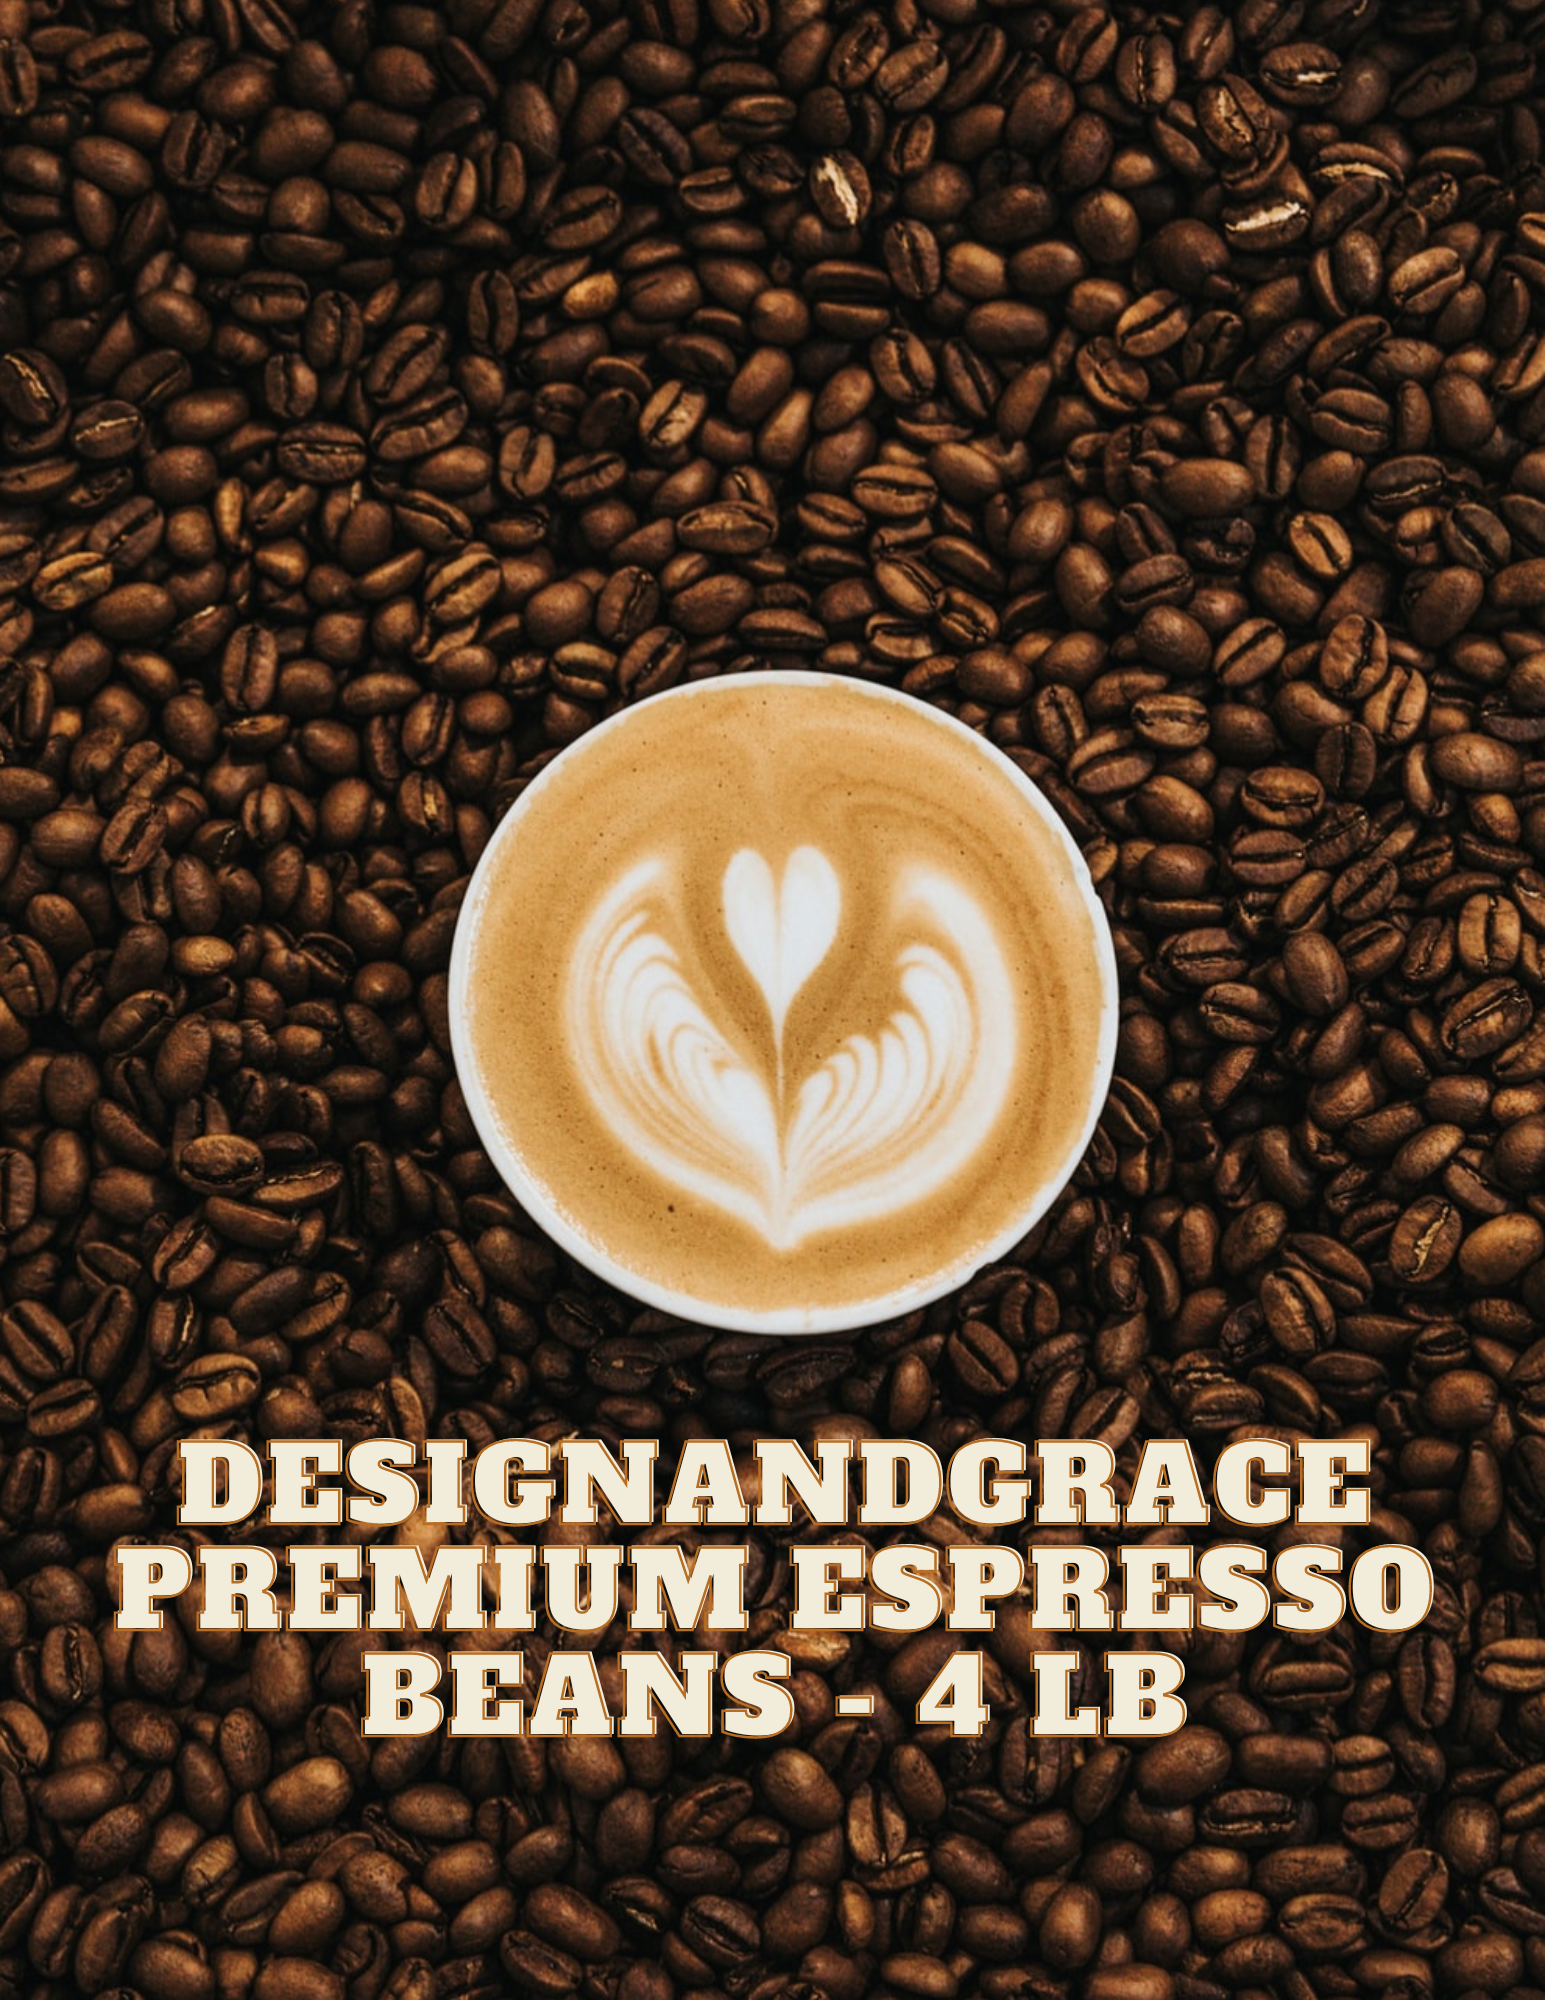 DesignandGrace Premium Espresso Coffee Beans - 4 lb